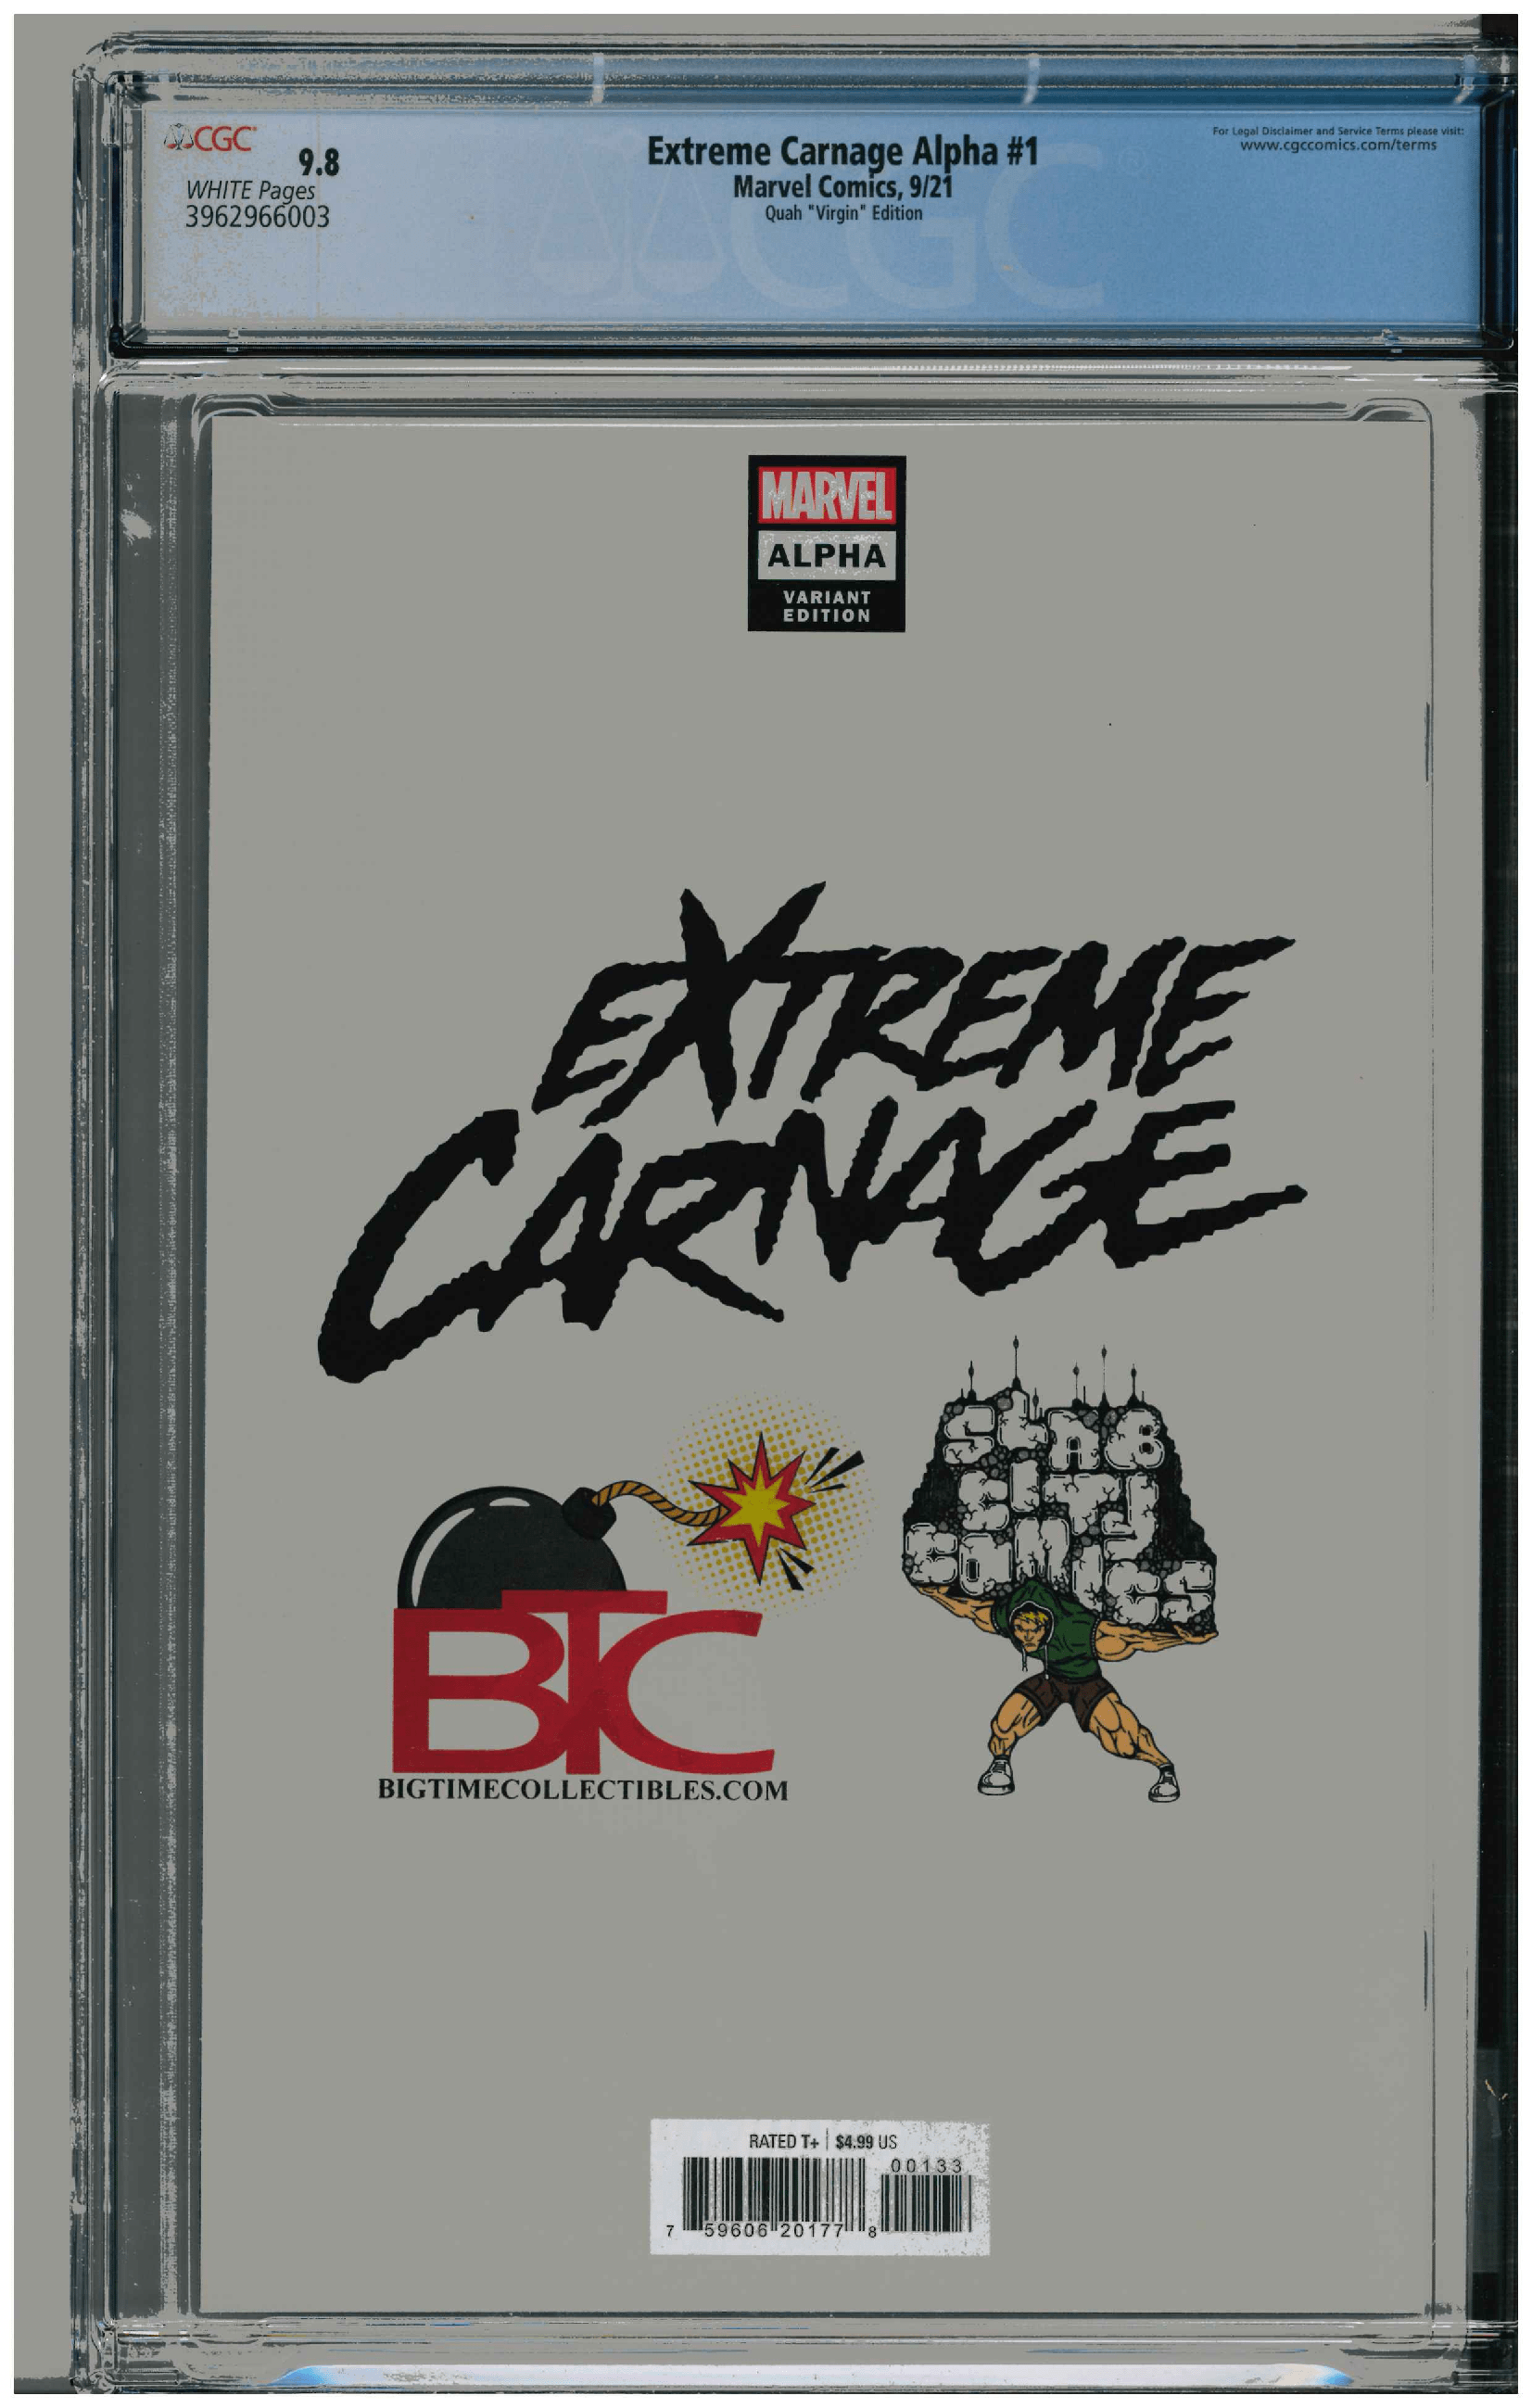 Extreme Carnage Alpha #1 backside